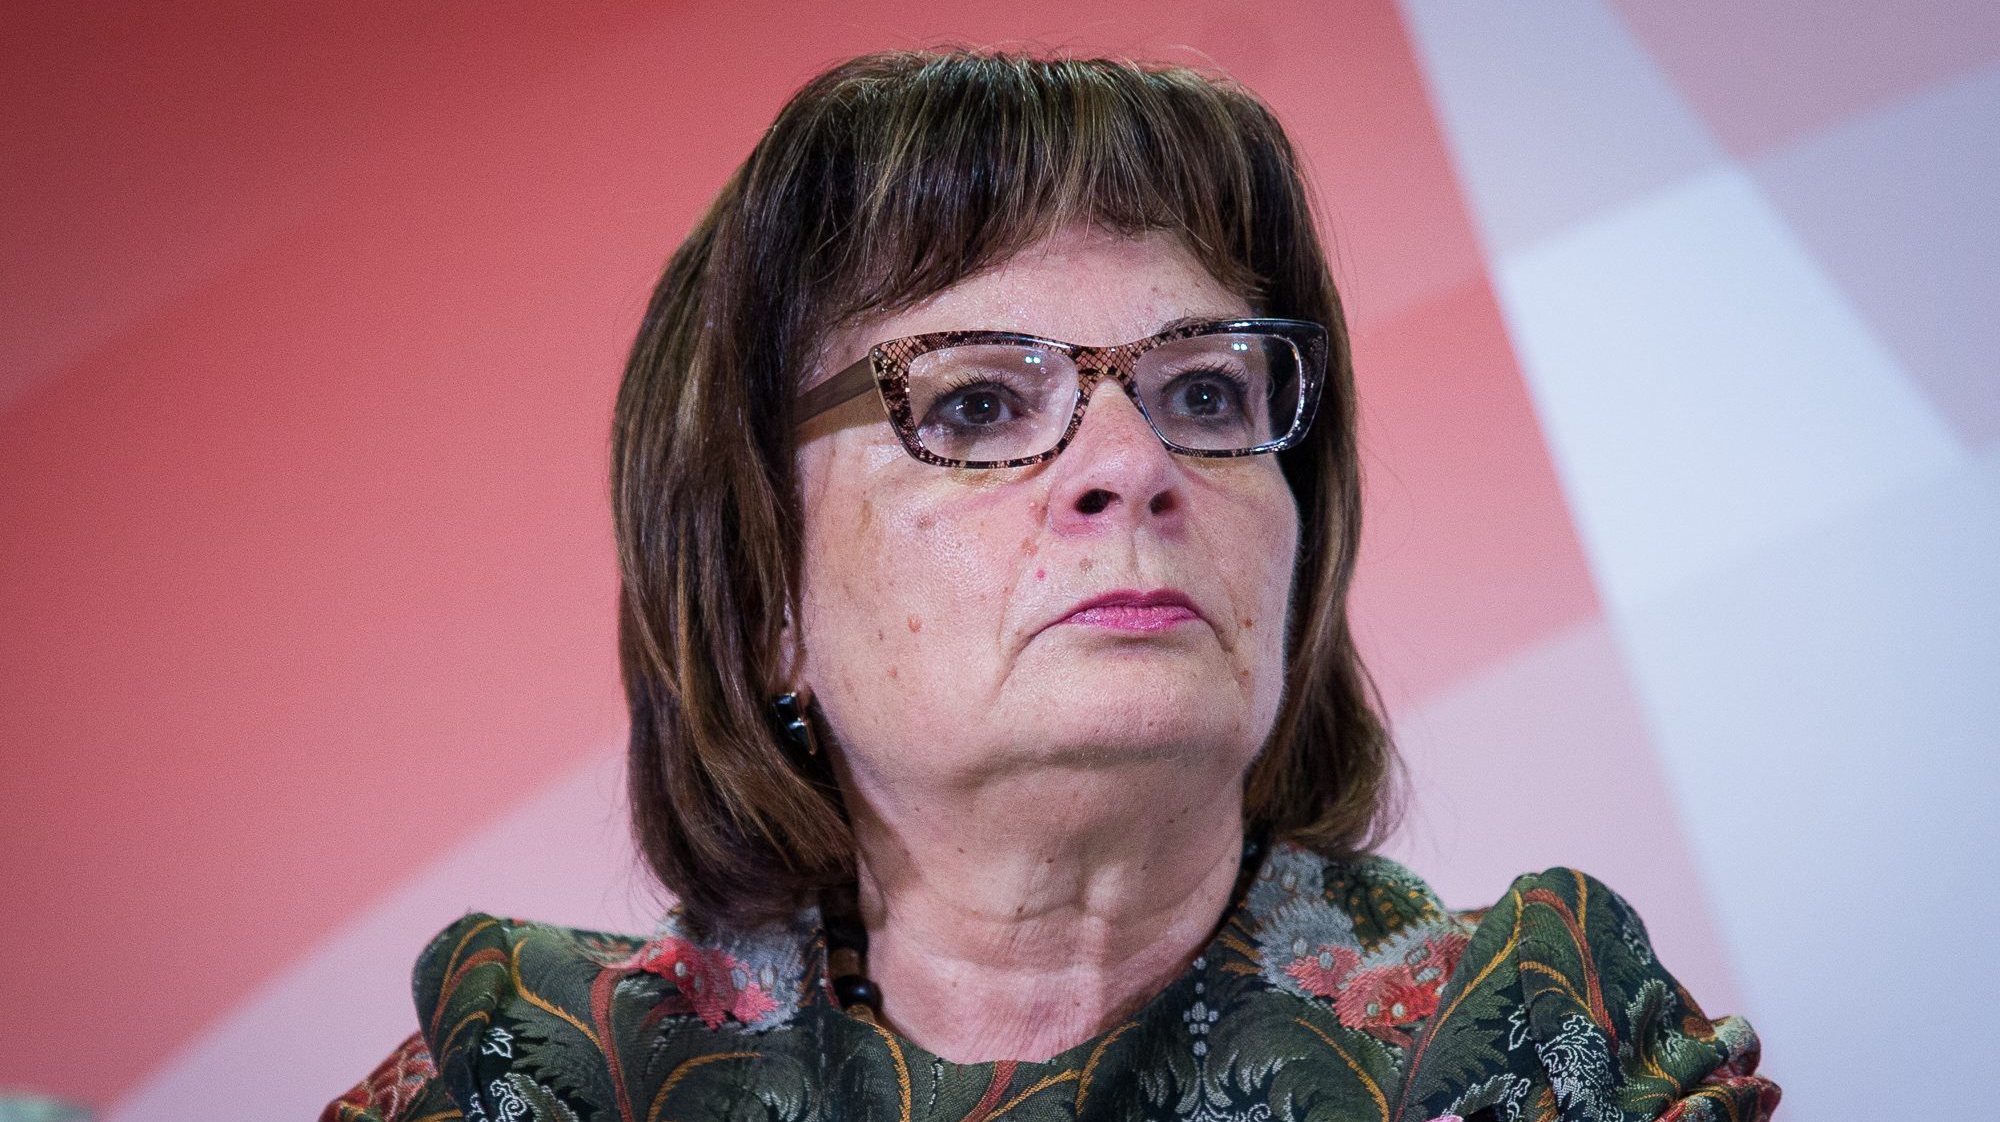 A autarca é sétima na lista de candidatos do PS, que é liderada pela antiga ministra da Saúde, Marta Temido